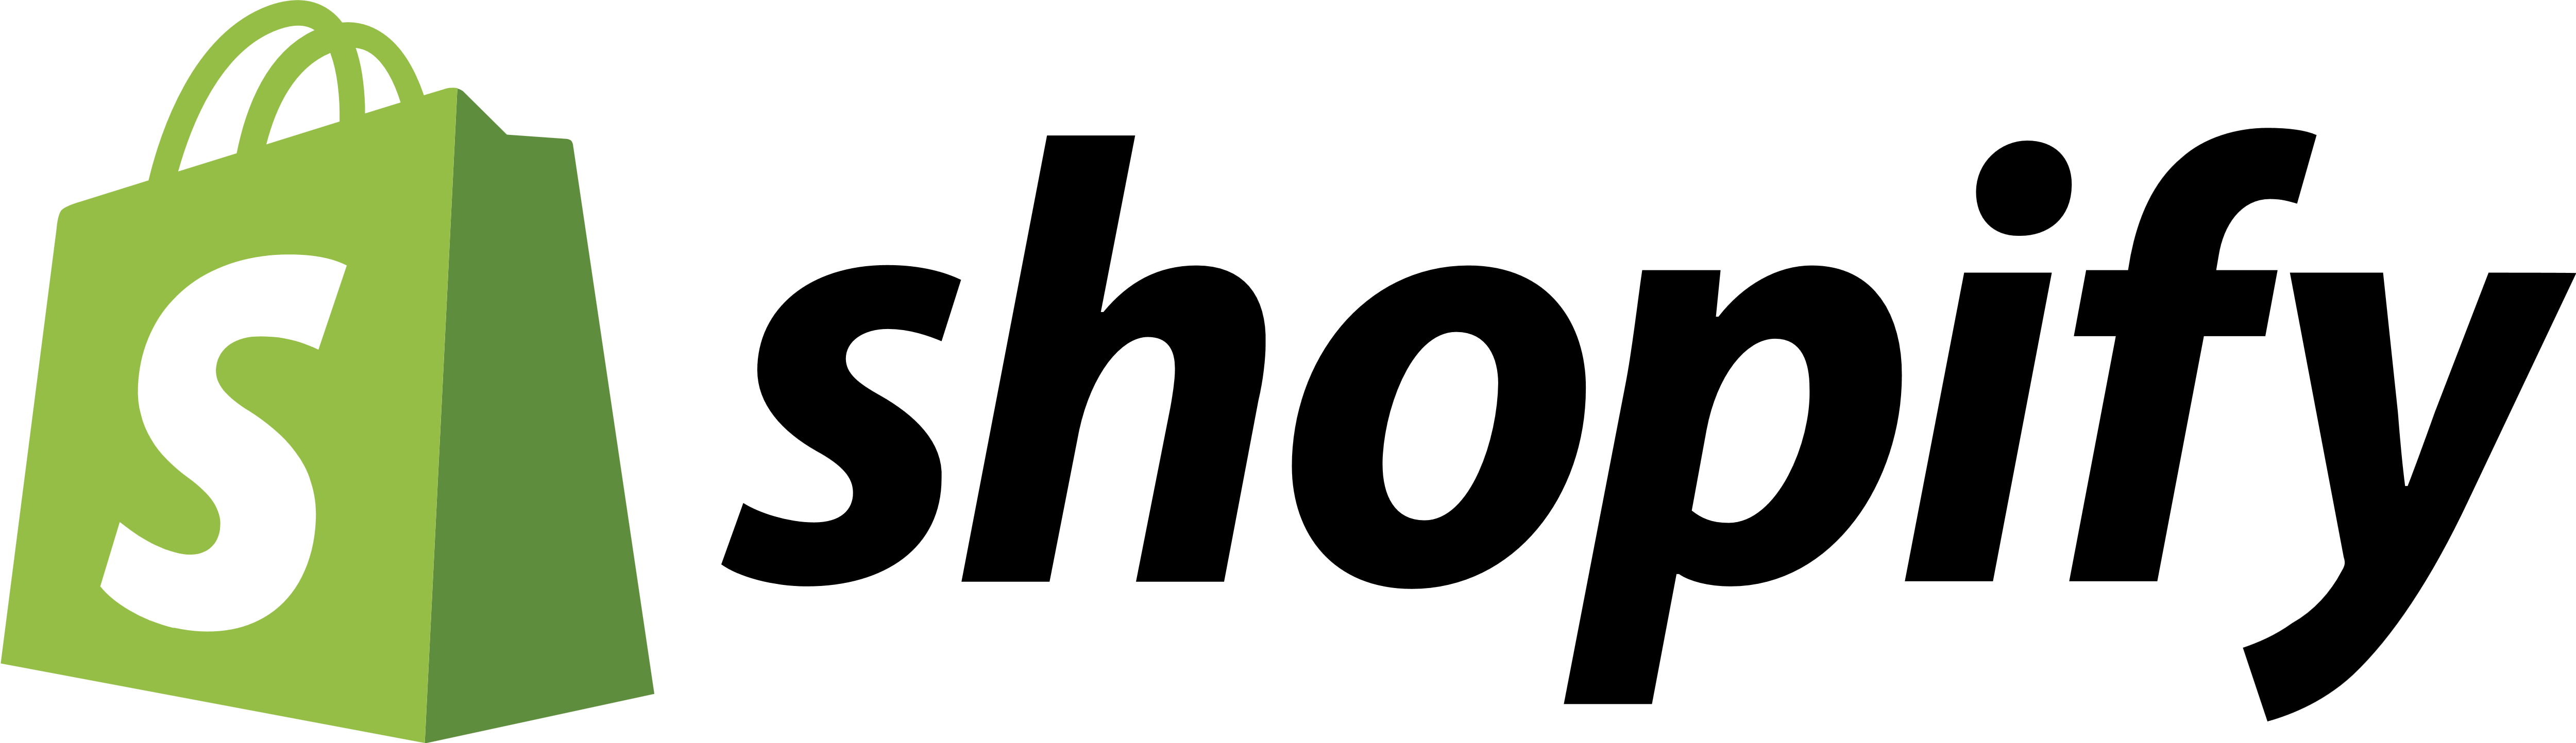 Shopify Store Logo - Shopify – Logos Download